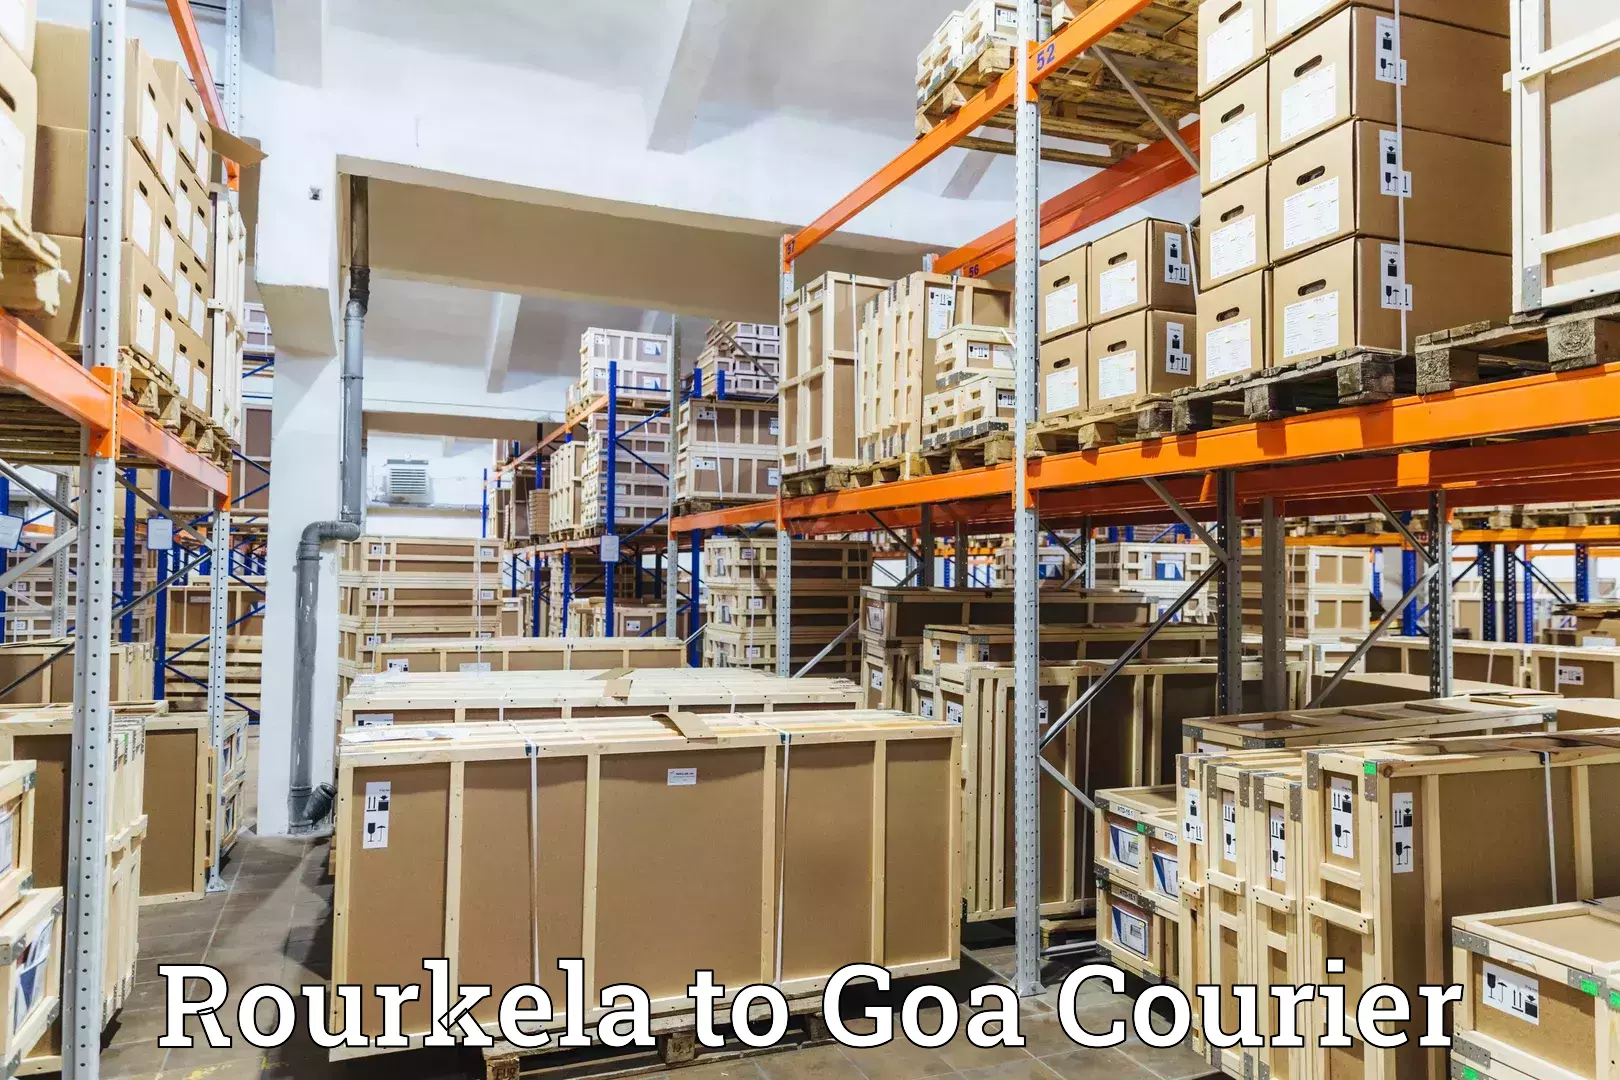 User-friendly courier app Rourkela to Mormugao Port